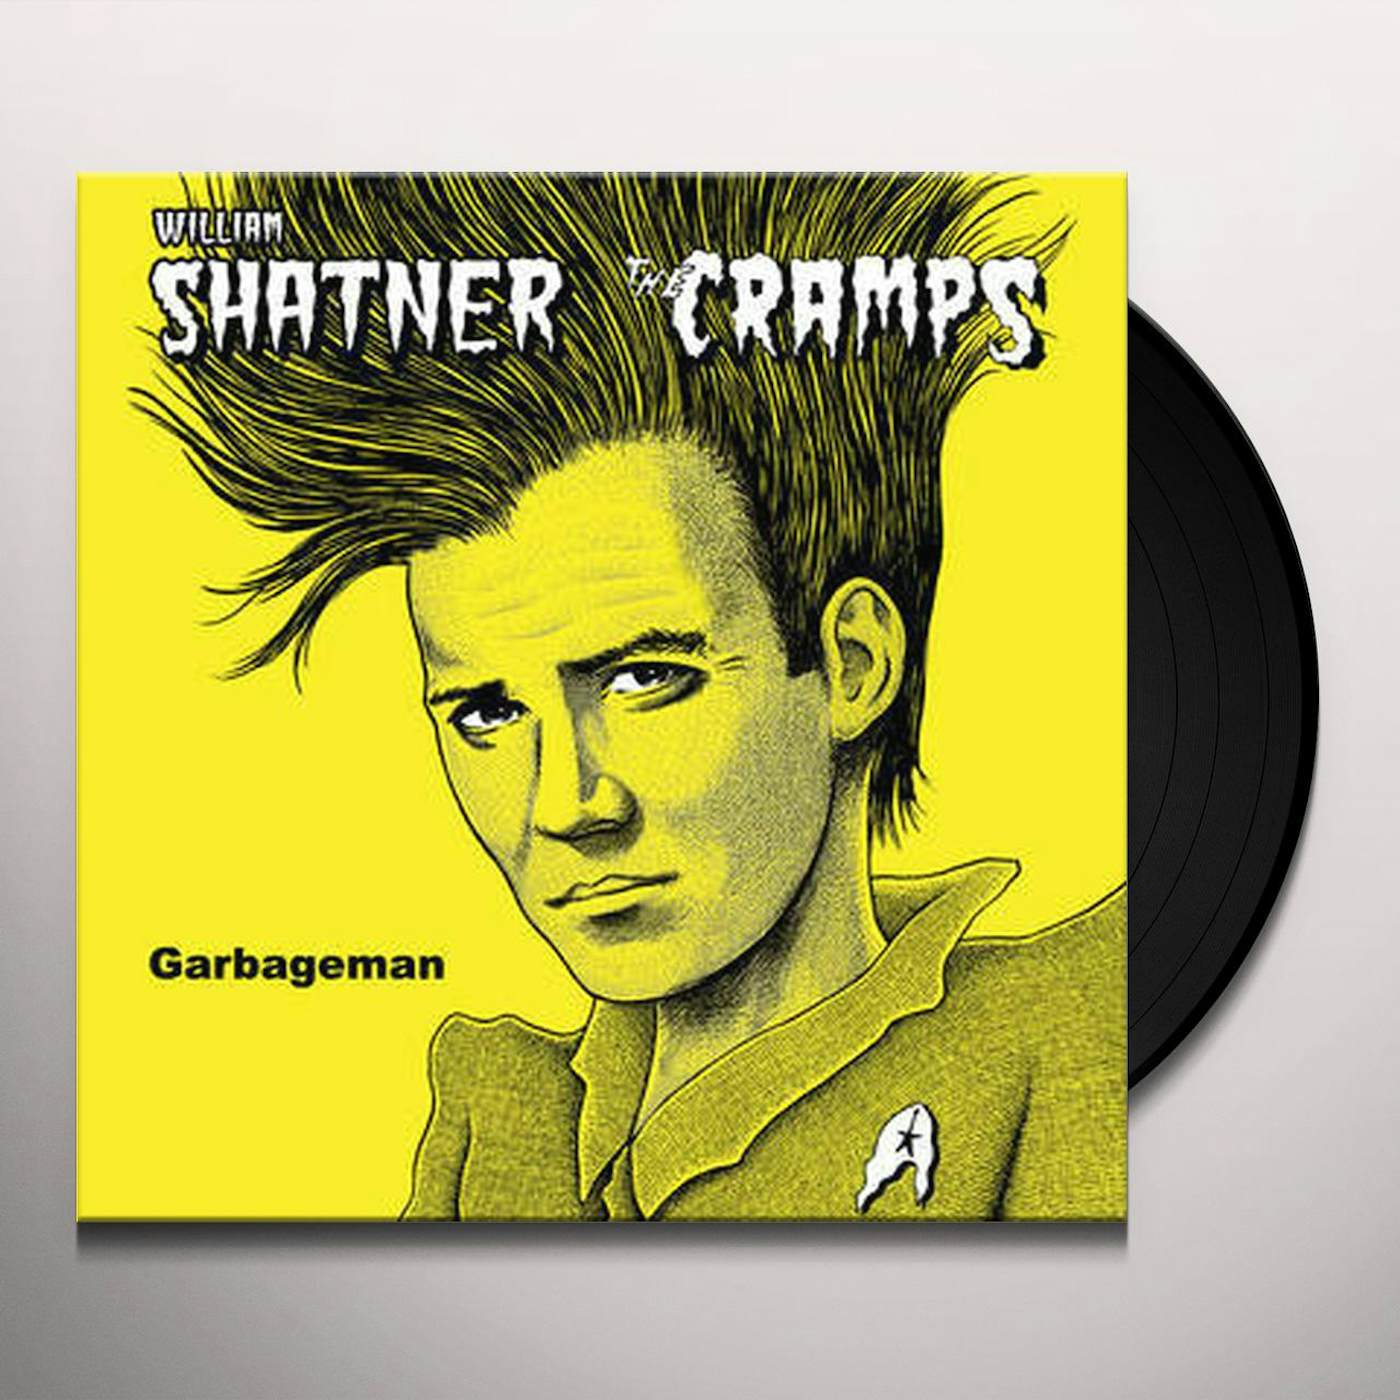 William Shatner / Cramps